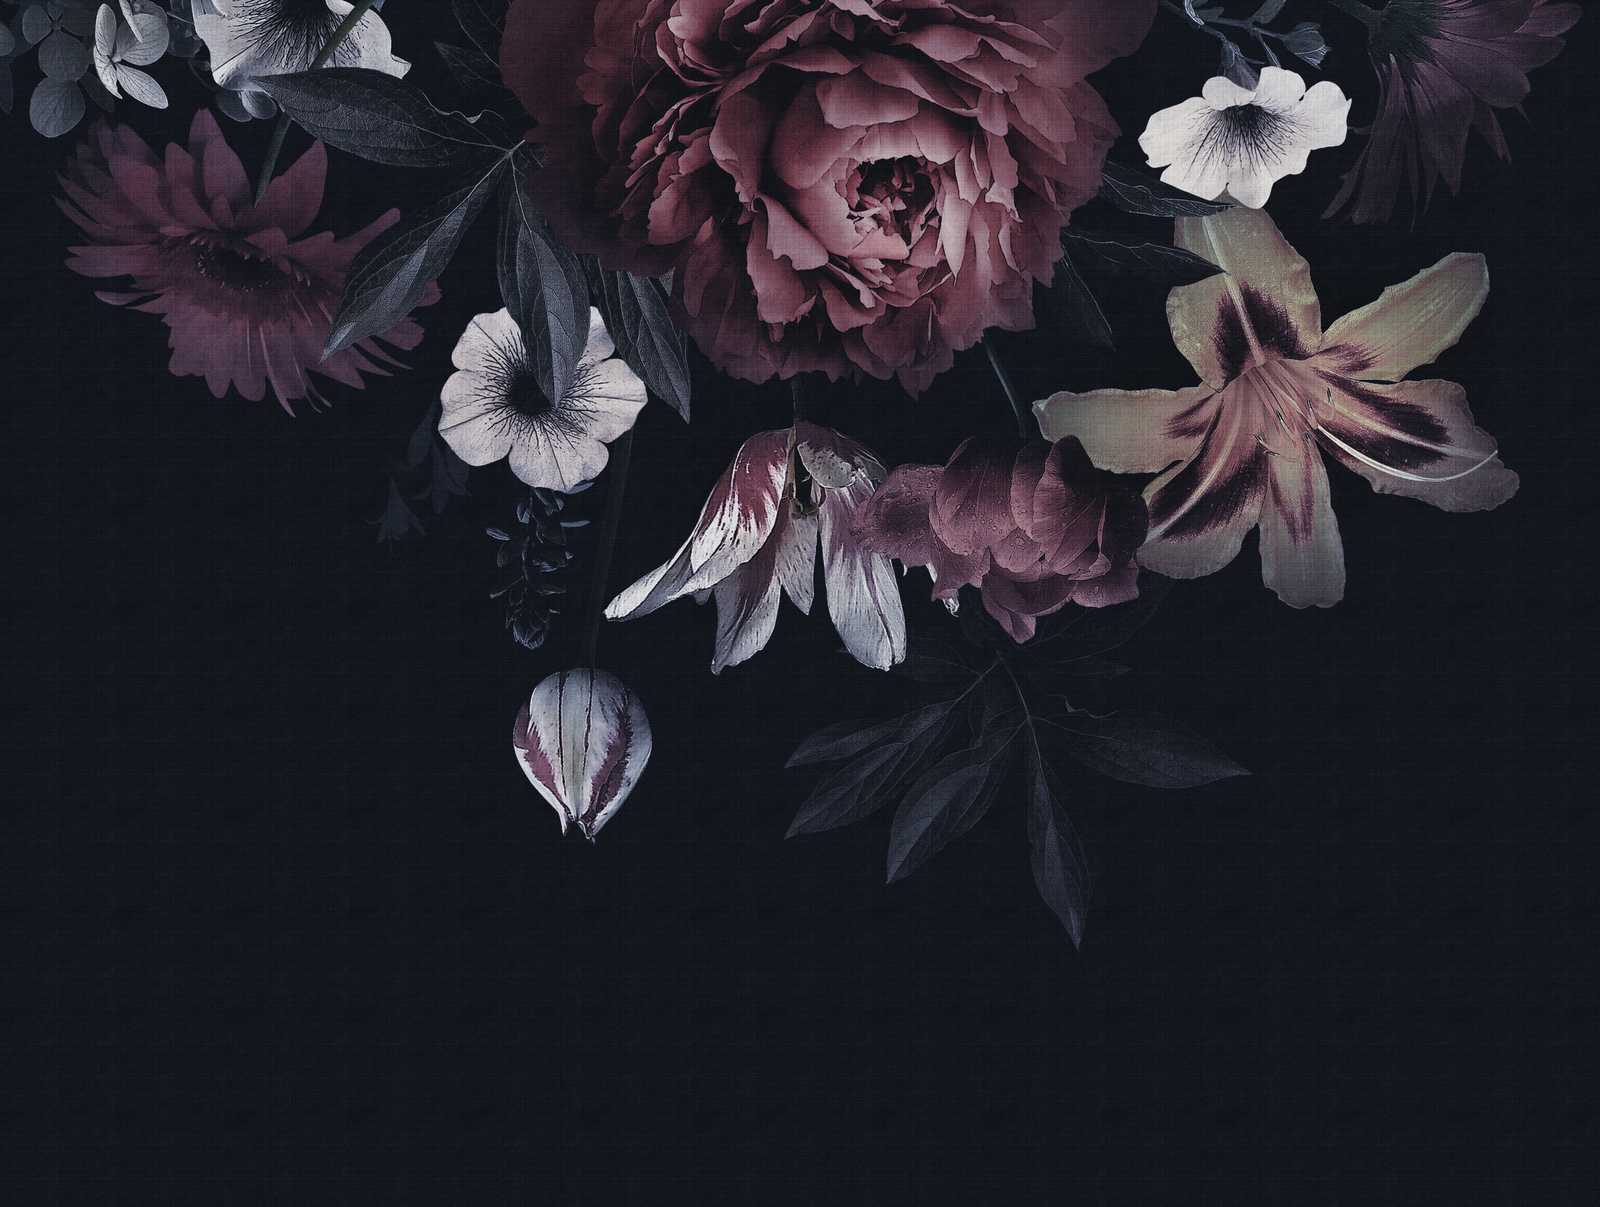             Sfondi novità | motivo scuro carta da parati fiori in stile pittura
        